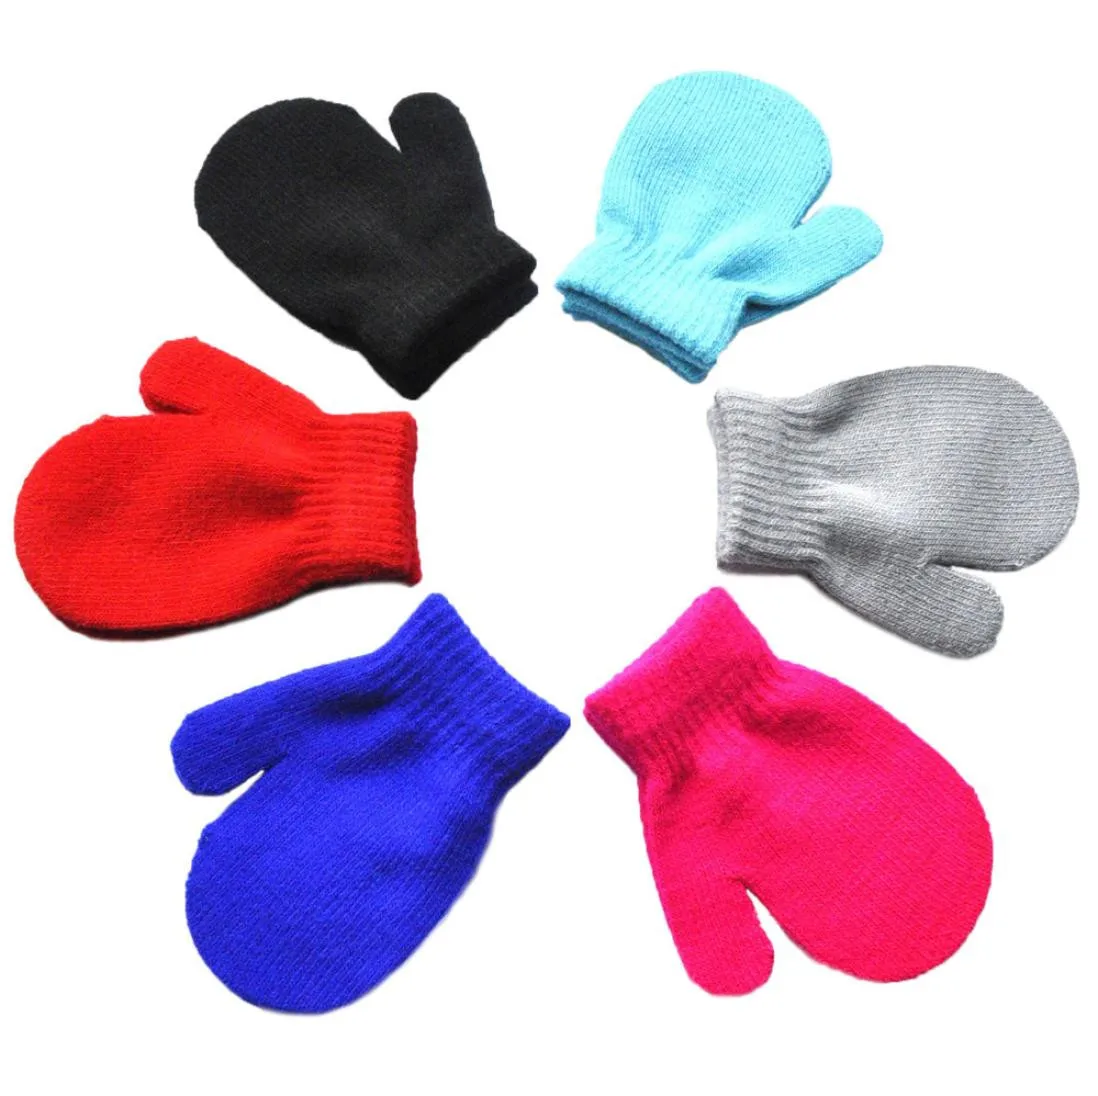 1 пара, новые милые детские перчатки, одноцветные, мягкие, хлопковые, для новорожденных, милый, для новорожденных и малышей, одноцветные, с принтом, для девочек и мальчиков, теплые, зимние